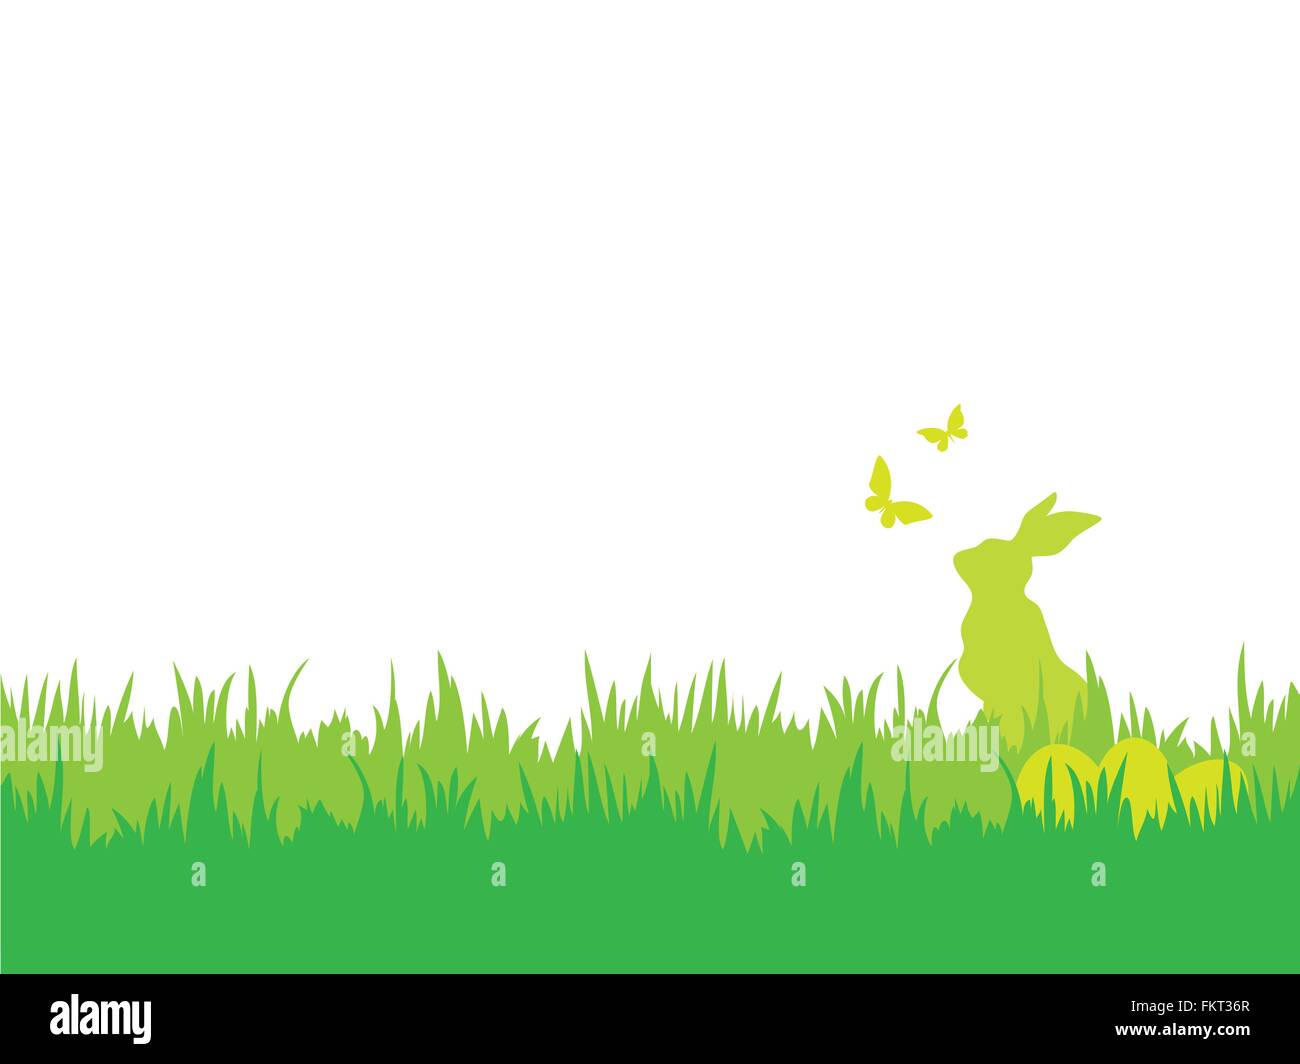 Ostern-Hintergrund mit Silhouetten von Hasen, Eiern, Schmetterlinge und Rasen Stock Vektor